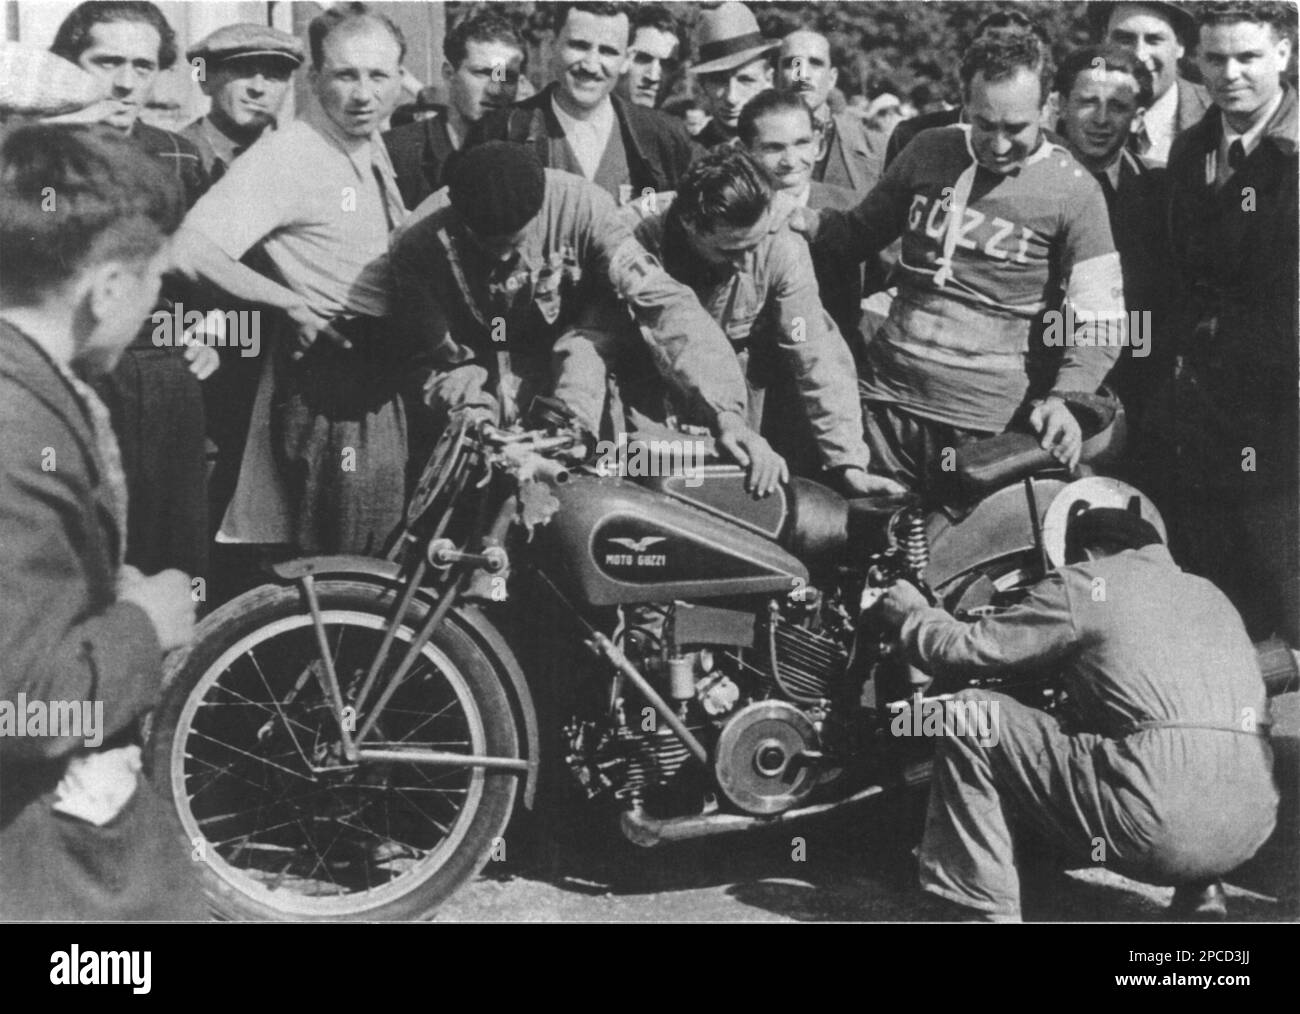 1935 , Isle of man , GROSSBRITANNIEN : der irische Motorradrennfahrer STANLEY WOODS ( 1903 - 1993 ) mit einem italienischen MOTO GUZZI 2 cilindri 500cc . Woods ritt 1935 für Moto Guzzi und gewann bei den TT-Rennen den ersten Sieg für einen nicht englischen Hersteller . Woods stand in der Geschichte der TT so hoch, dass ihn 1968 ein Expertengremium zum größten Wettbewerber der Insel ernannte. Im Jahr 1957 kehrte er zurück, um das Goldene Jubiläum der TT-Rennen zu feiern, und fuhr mit etwas mehr als 82mph km auf einem 350cc-Moto Guzzi um den Golfplatz. - SPORT - MOTOCICLISMO - MOTO - gara motociclistica - Korridore Mo Stockfoto